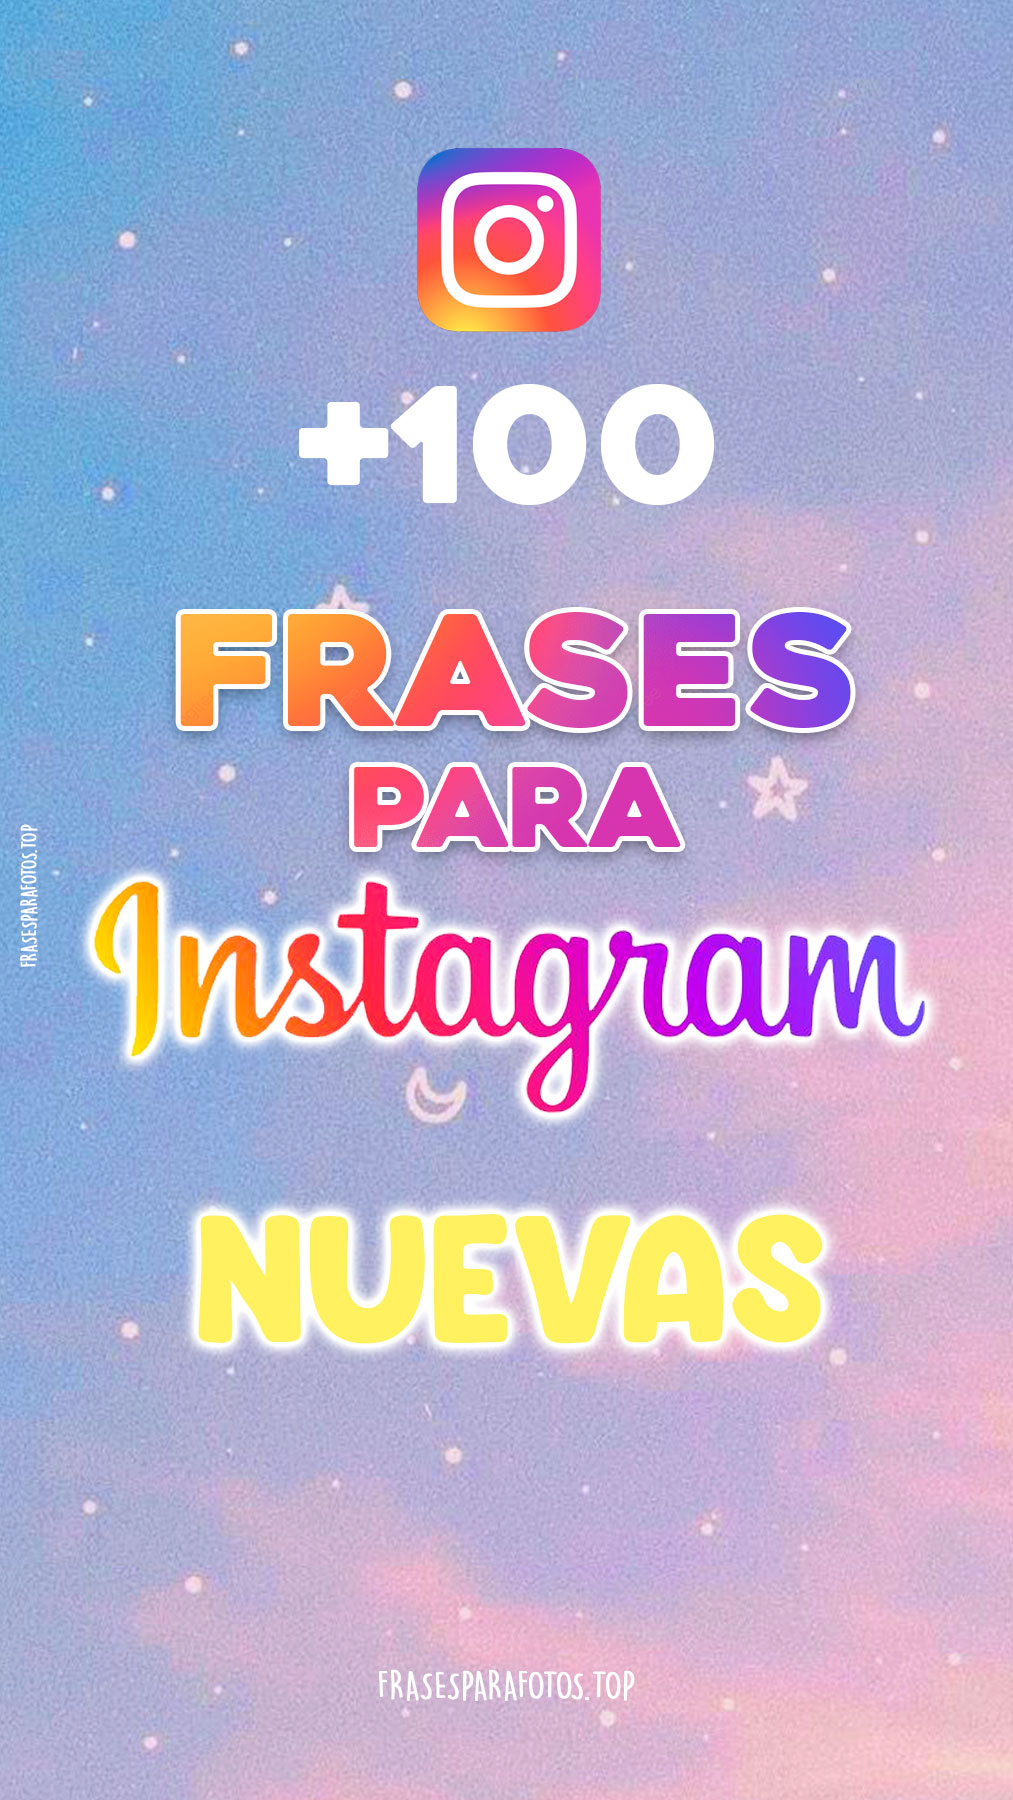 100+ FRASES PARA INSTAGRAM # Nuevas para Fotos y Perfil